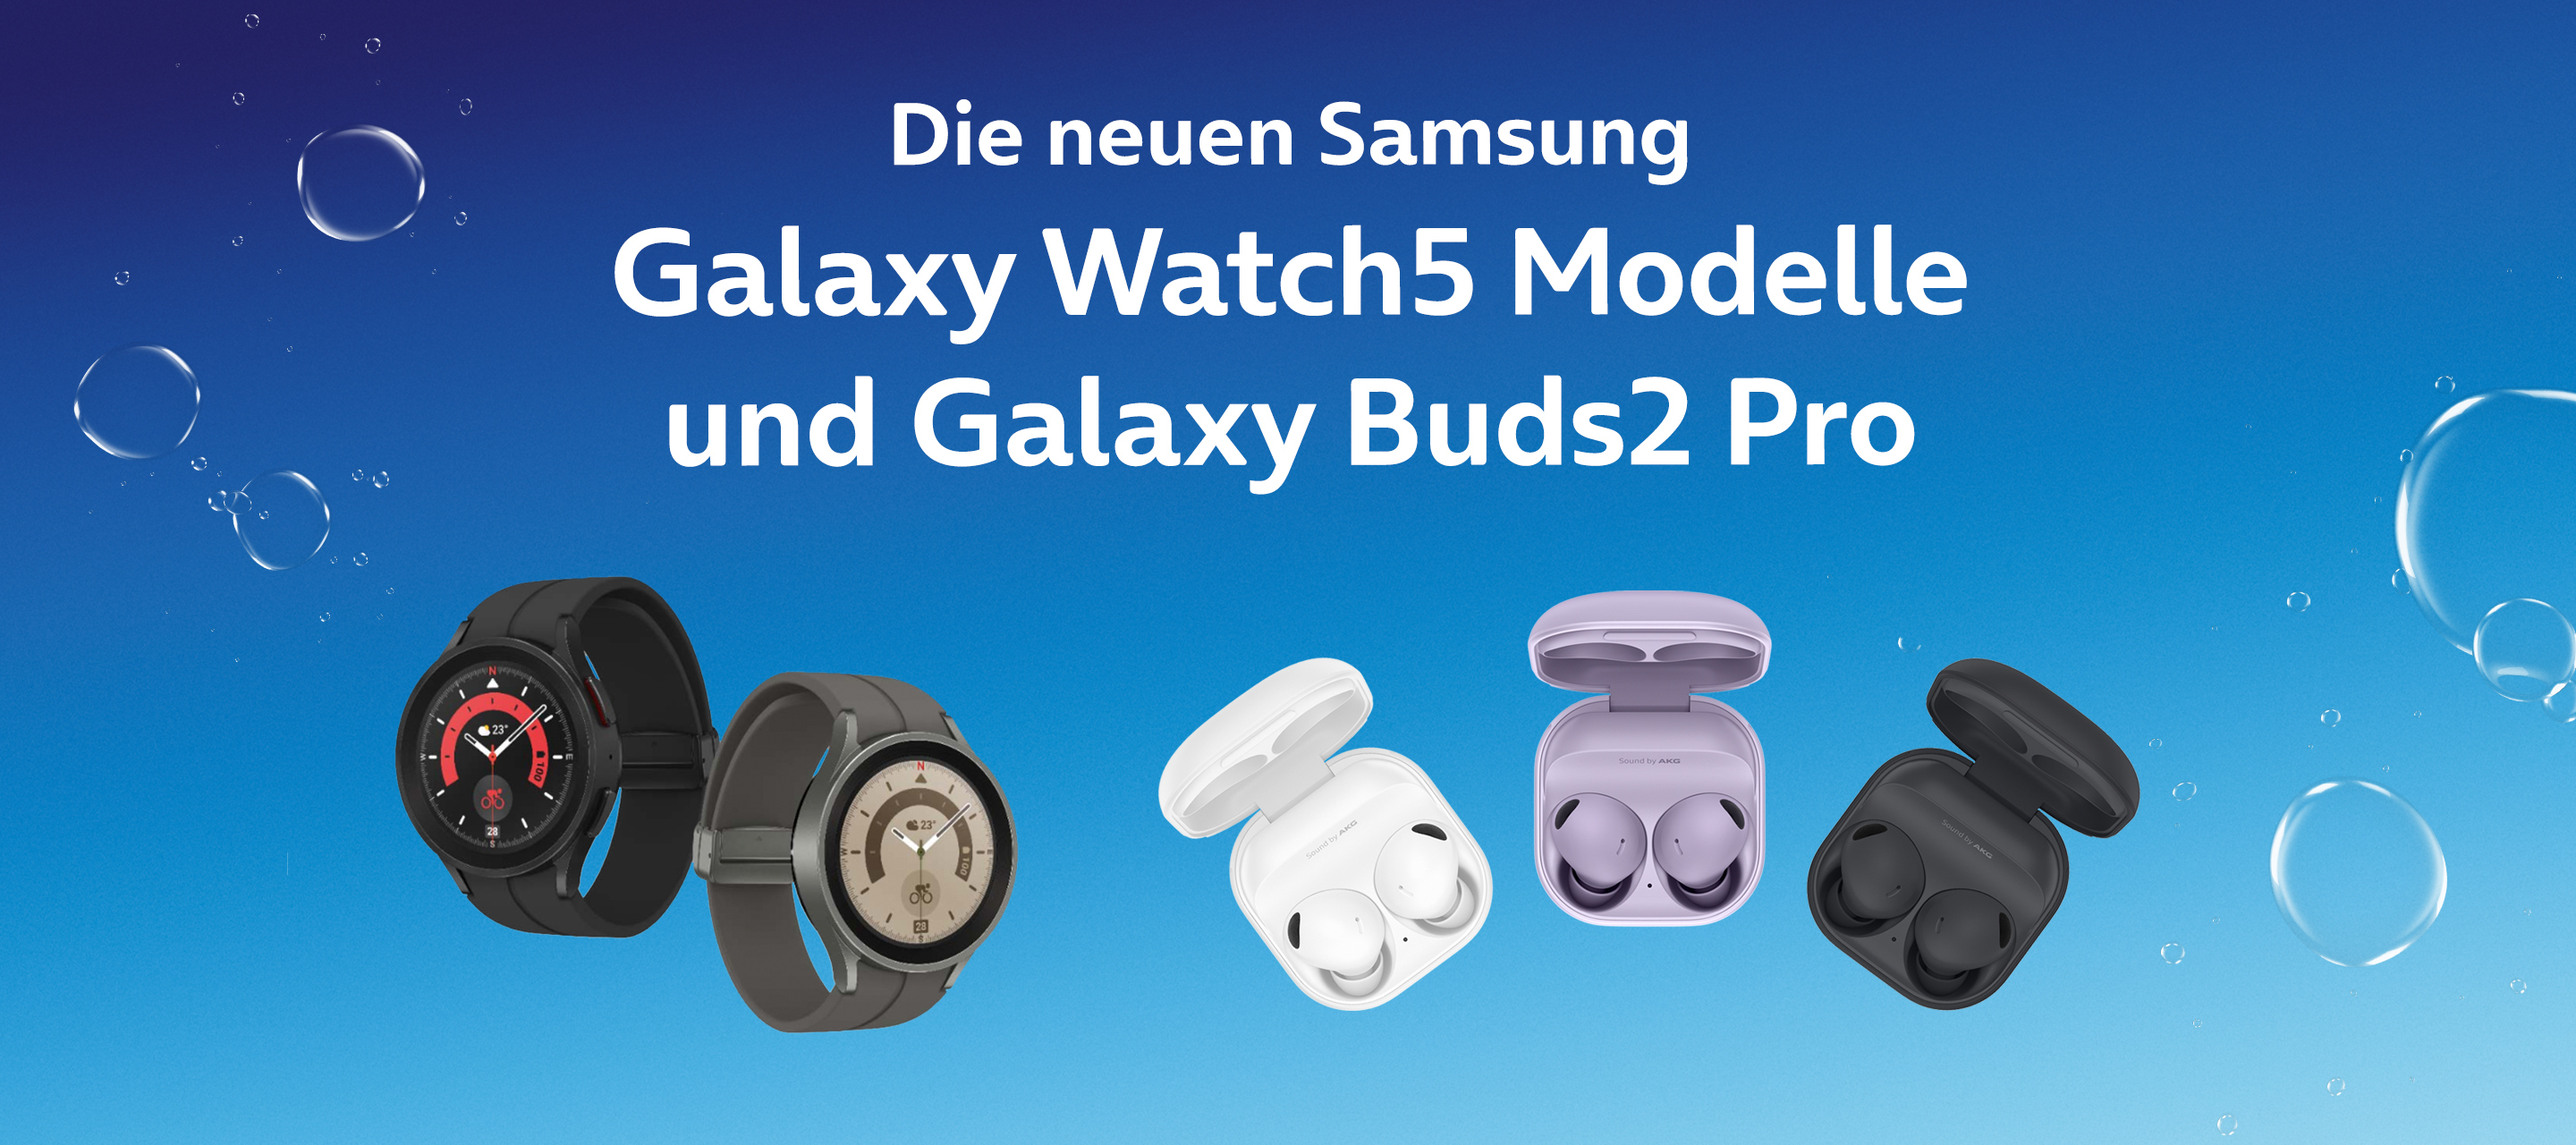 Die neuen Samsung Galaxy Watch5 Modelle und Galaxy Buds2 Pro bei O₂